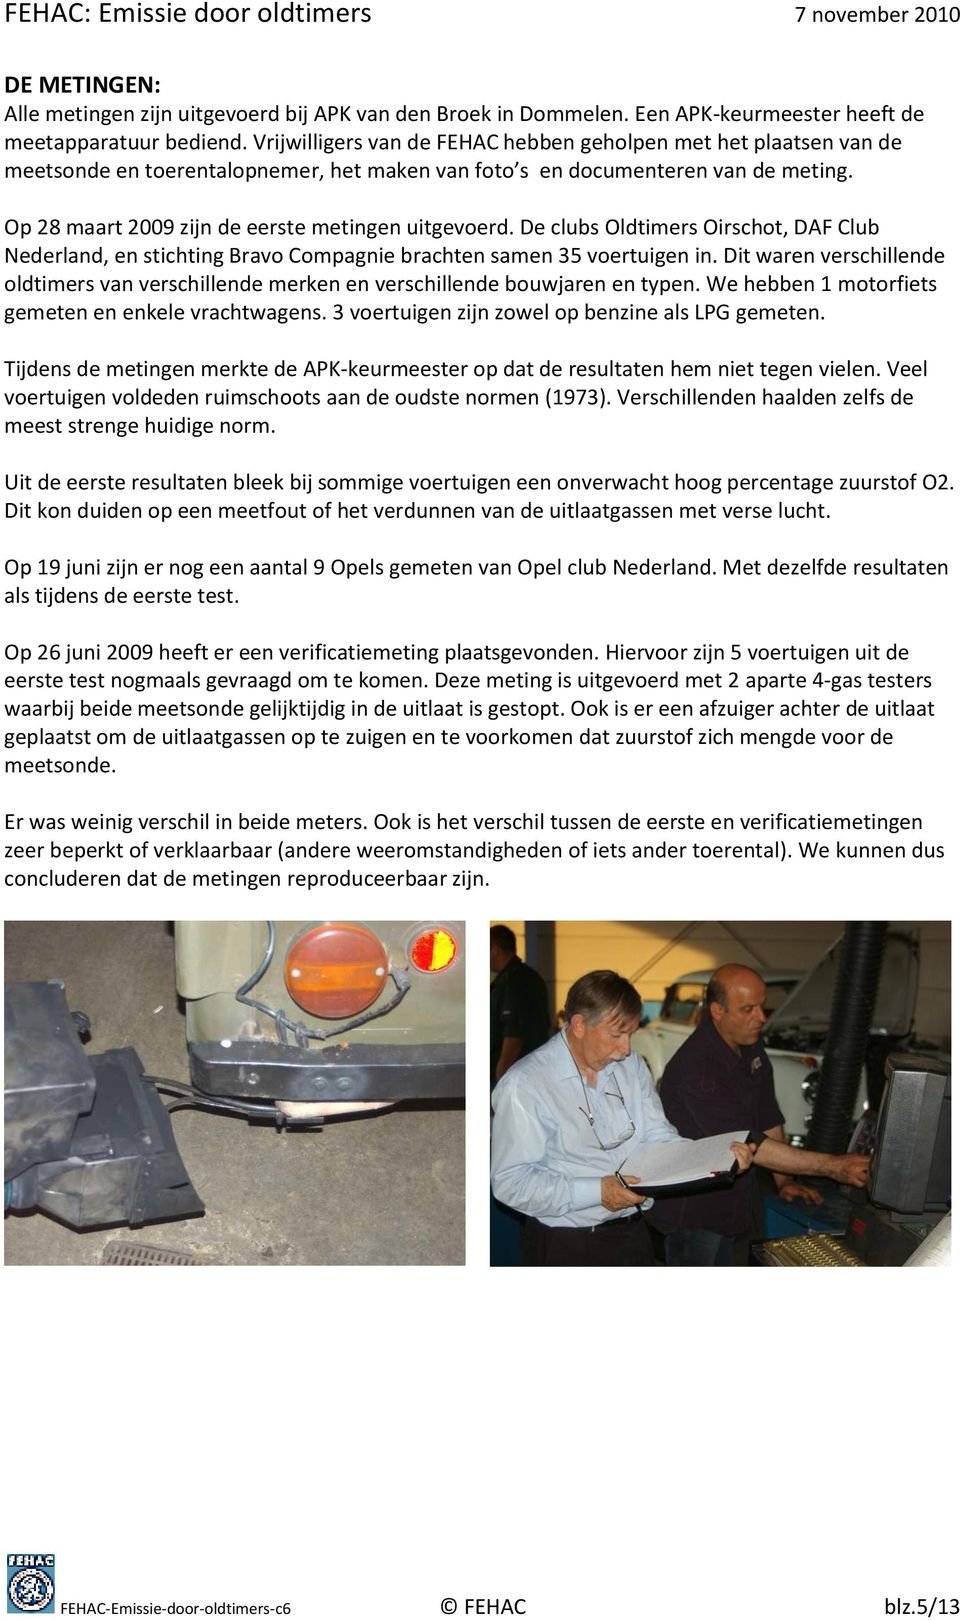 Op 28 maart 2009 zijn de eerste metingen uitgevoerd. De clubs Oldtimers Oirschot, DAF Club Nederland, en stichting Bravo Compagnie brachten samen 35 voertuigen in.